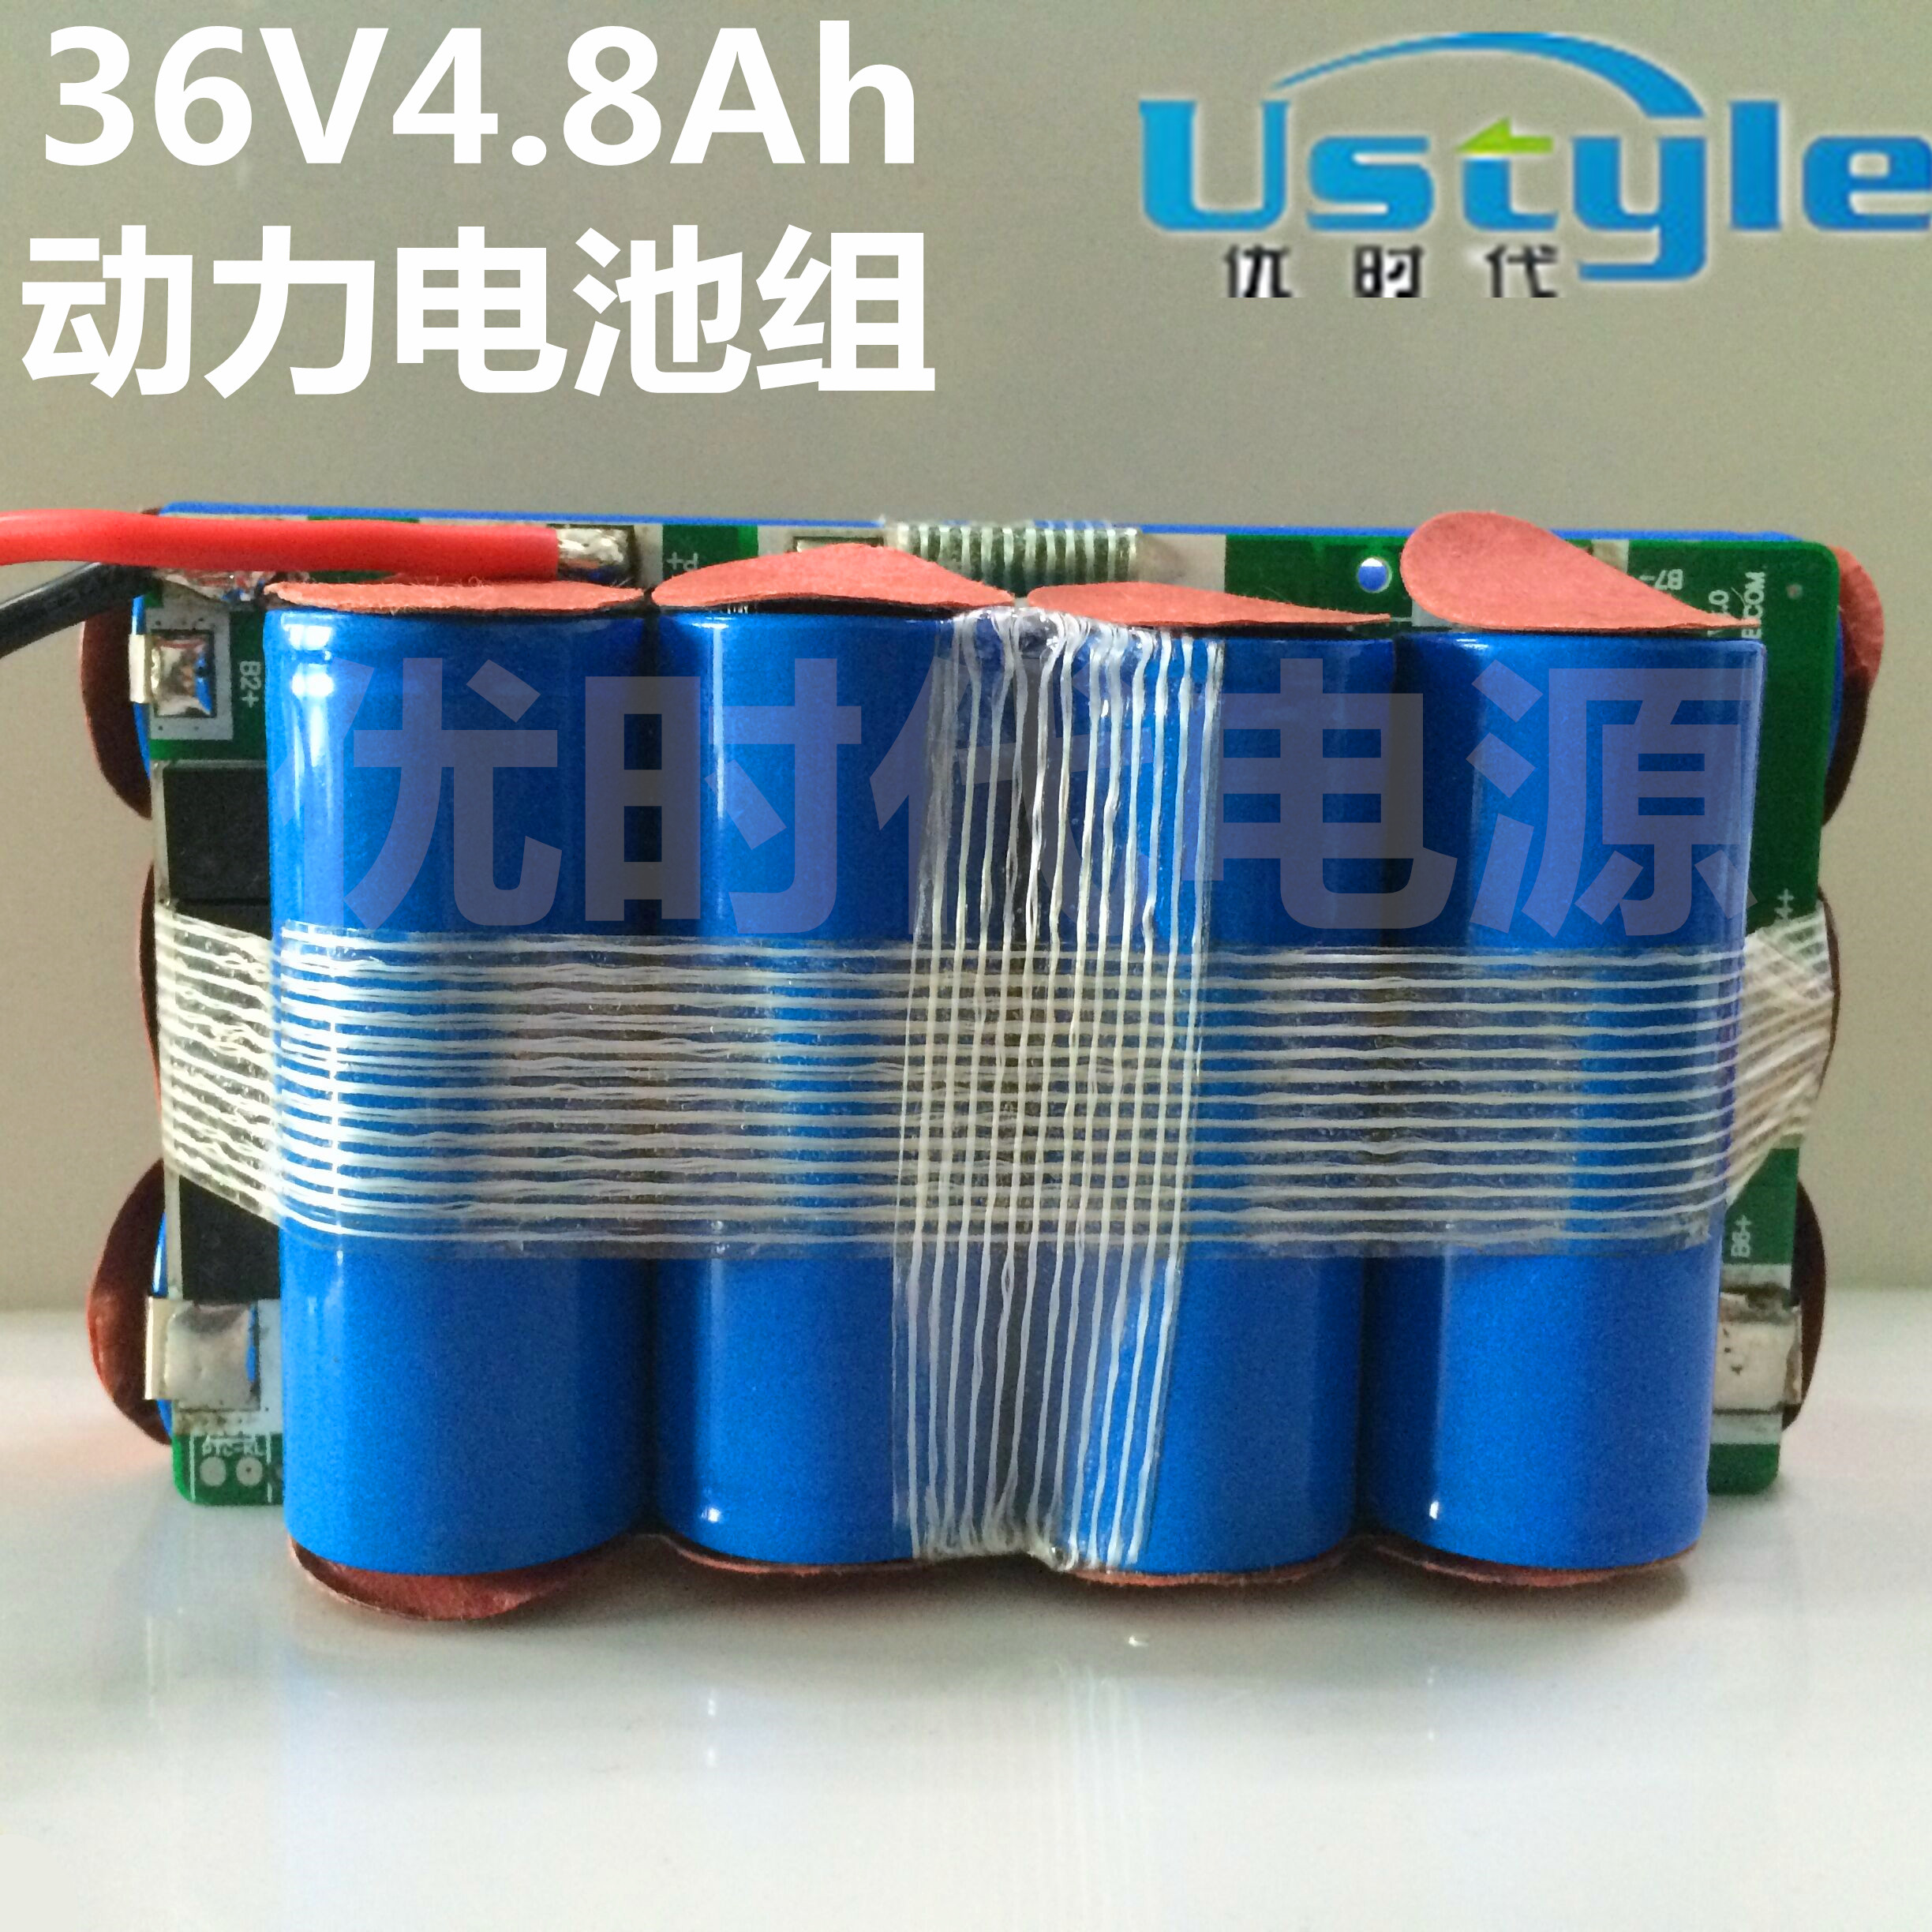 供应用于电动扭扭车的优时代36V电动双轮平衡车锂电池组图片